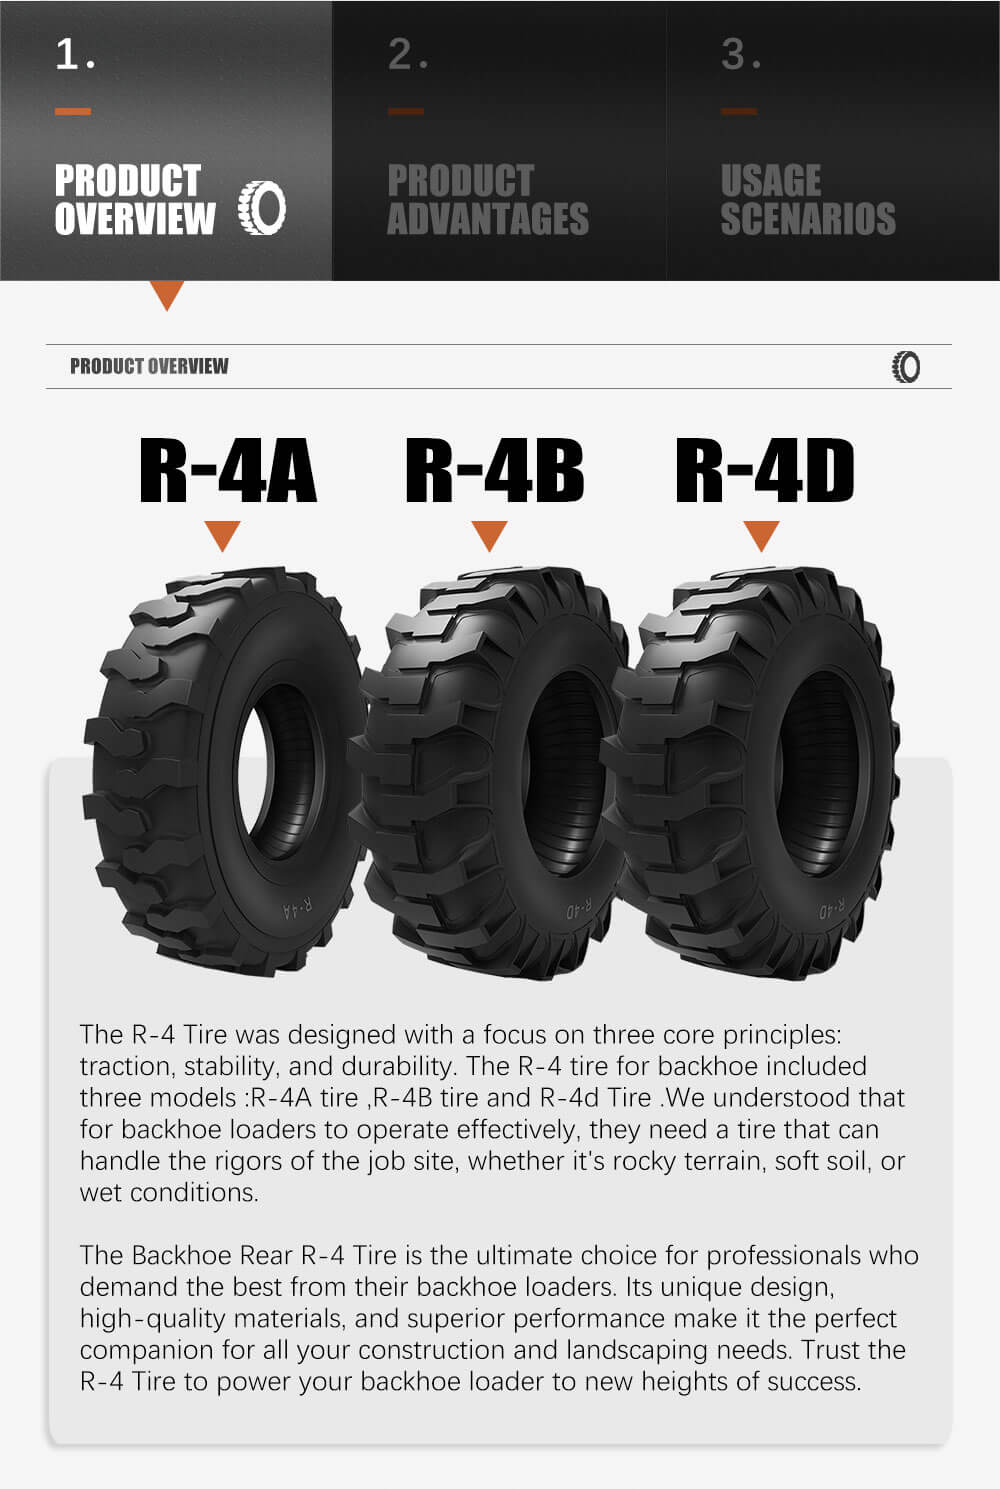 Backhoe Rear R-4 Tire